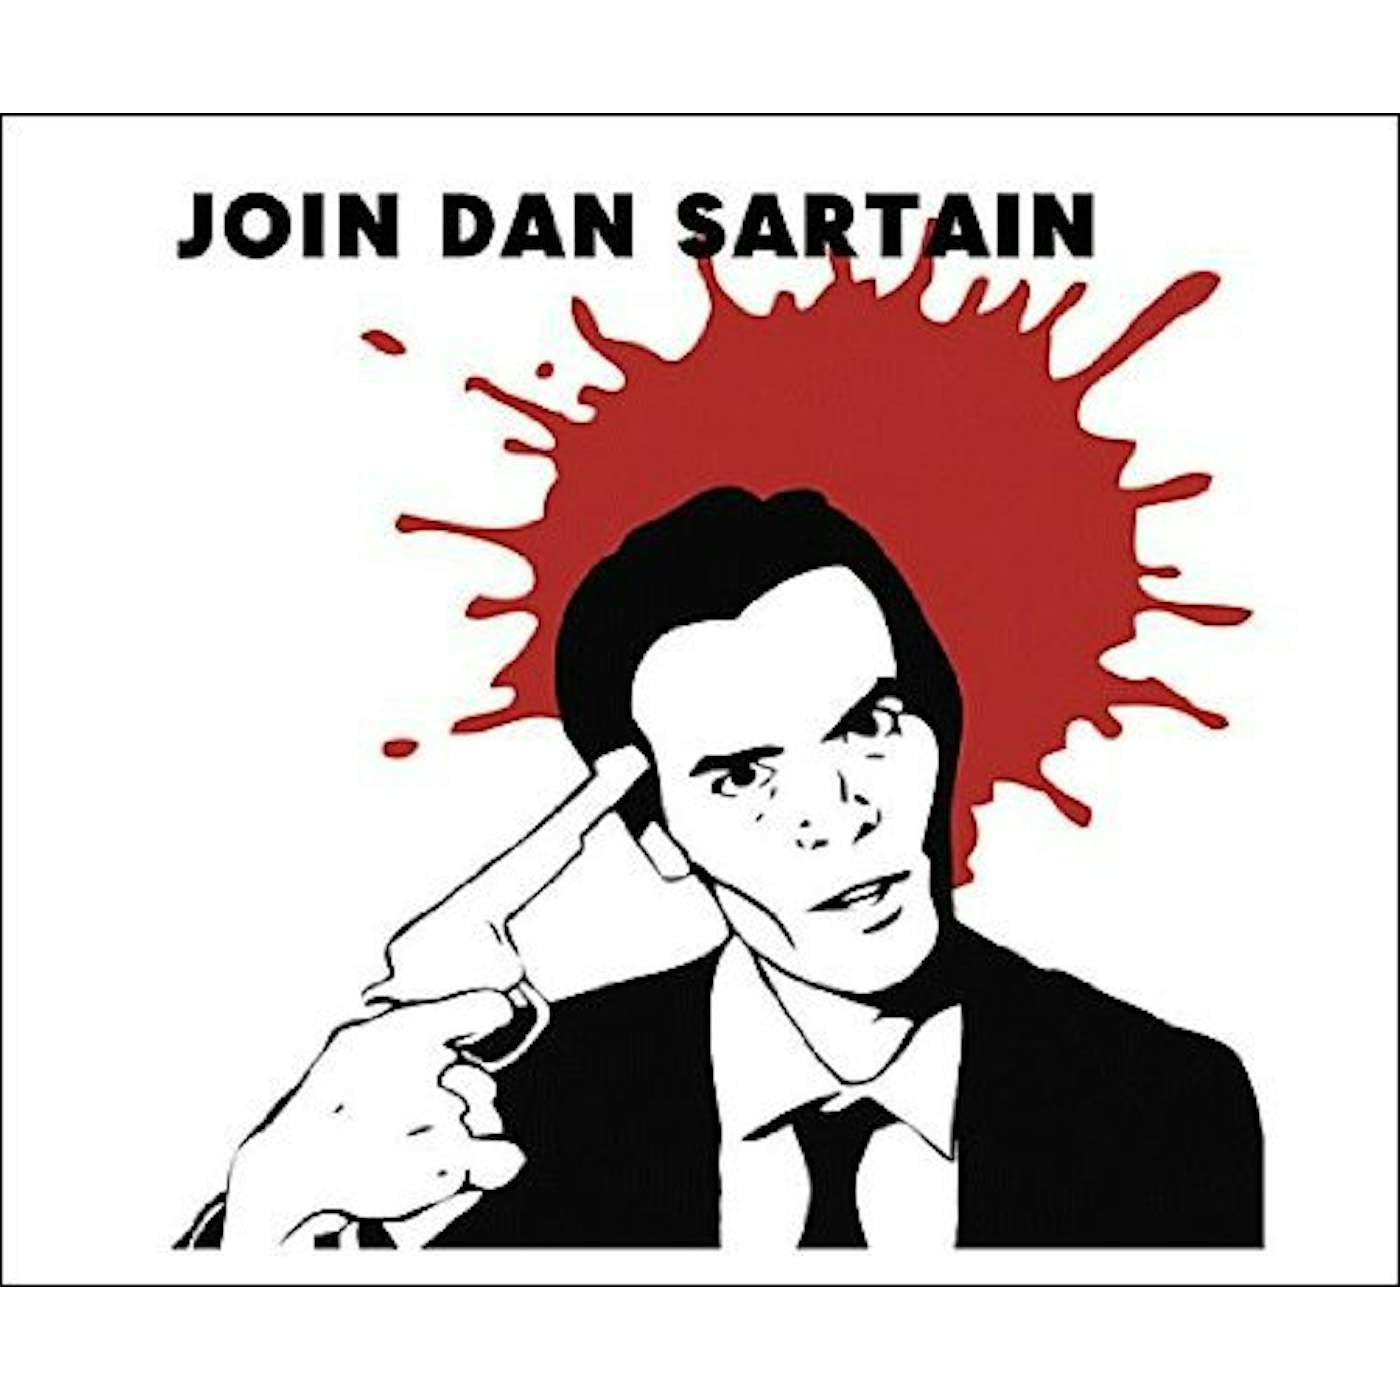 JOIN DAN SARTAIN: DIRECT METAL MASTER Vinyl Record